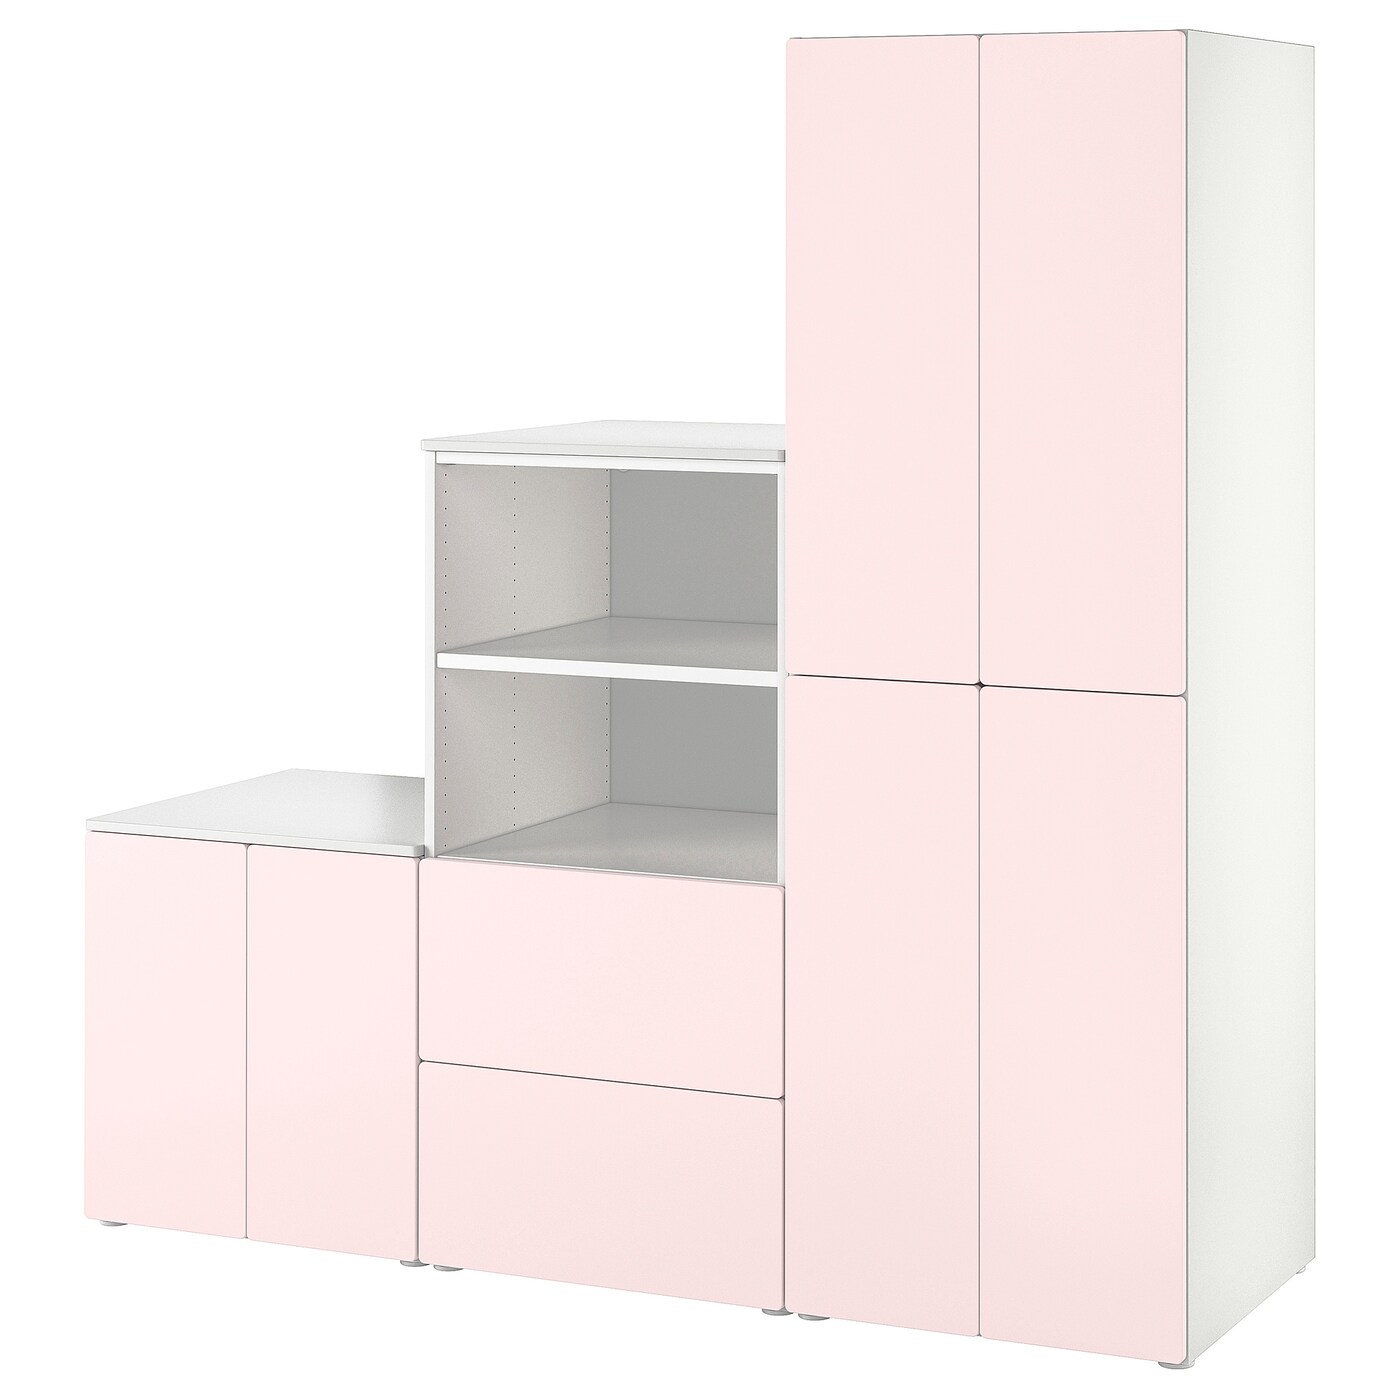 Детская гардеробная комбинация - IKEA PLATSA SMÅSTAD/SMASTAD, 181x57x180см, белый/розовый, ПЛАТСА СМОСТАД ИКЕА